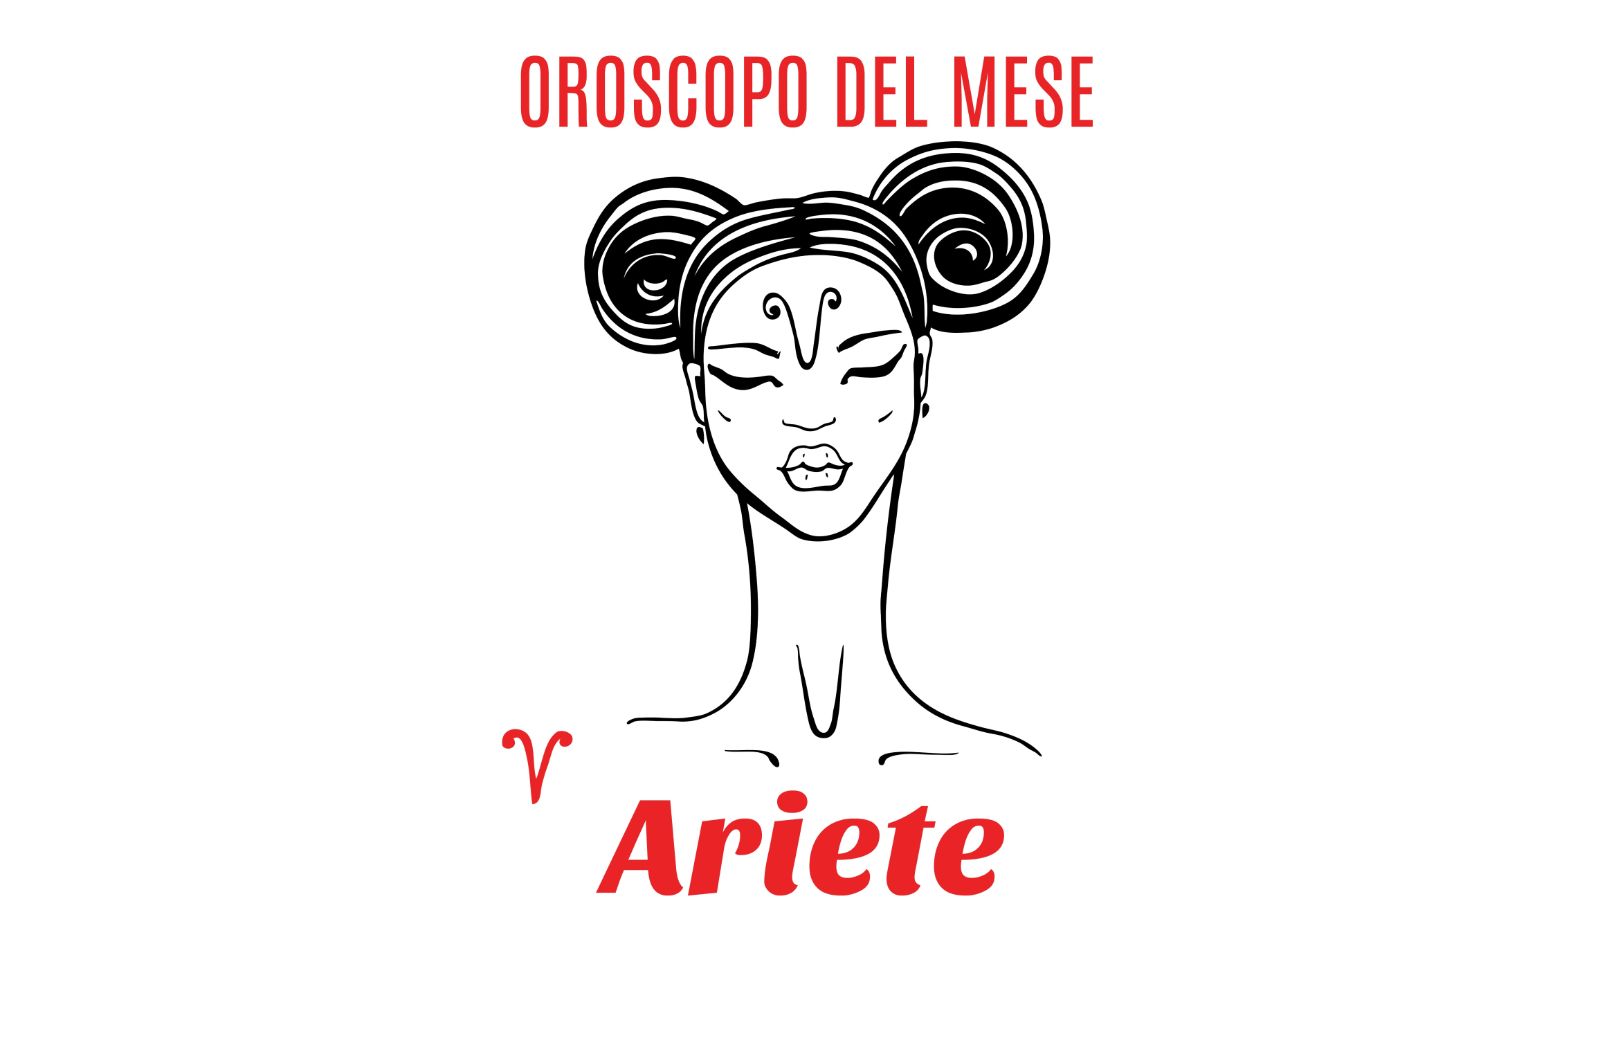 Oroscopo del mese: Ariete - giugno 2020